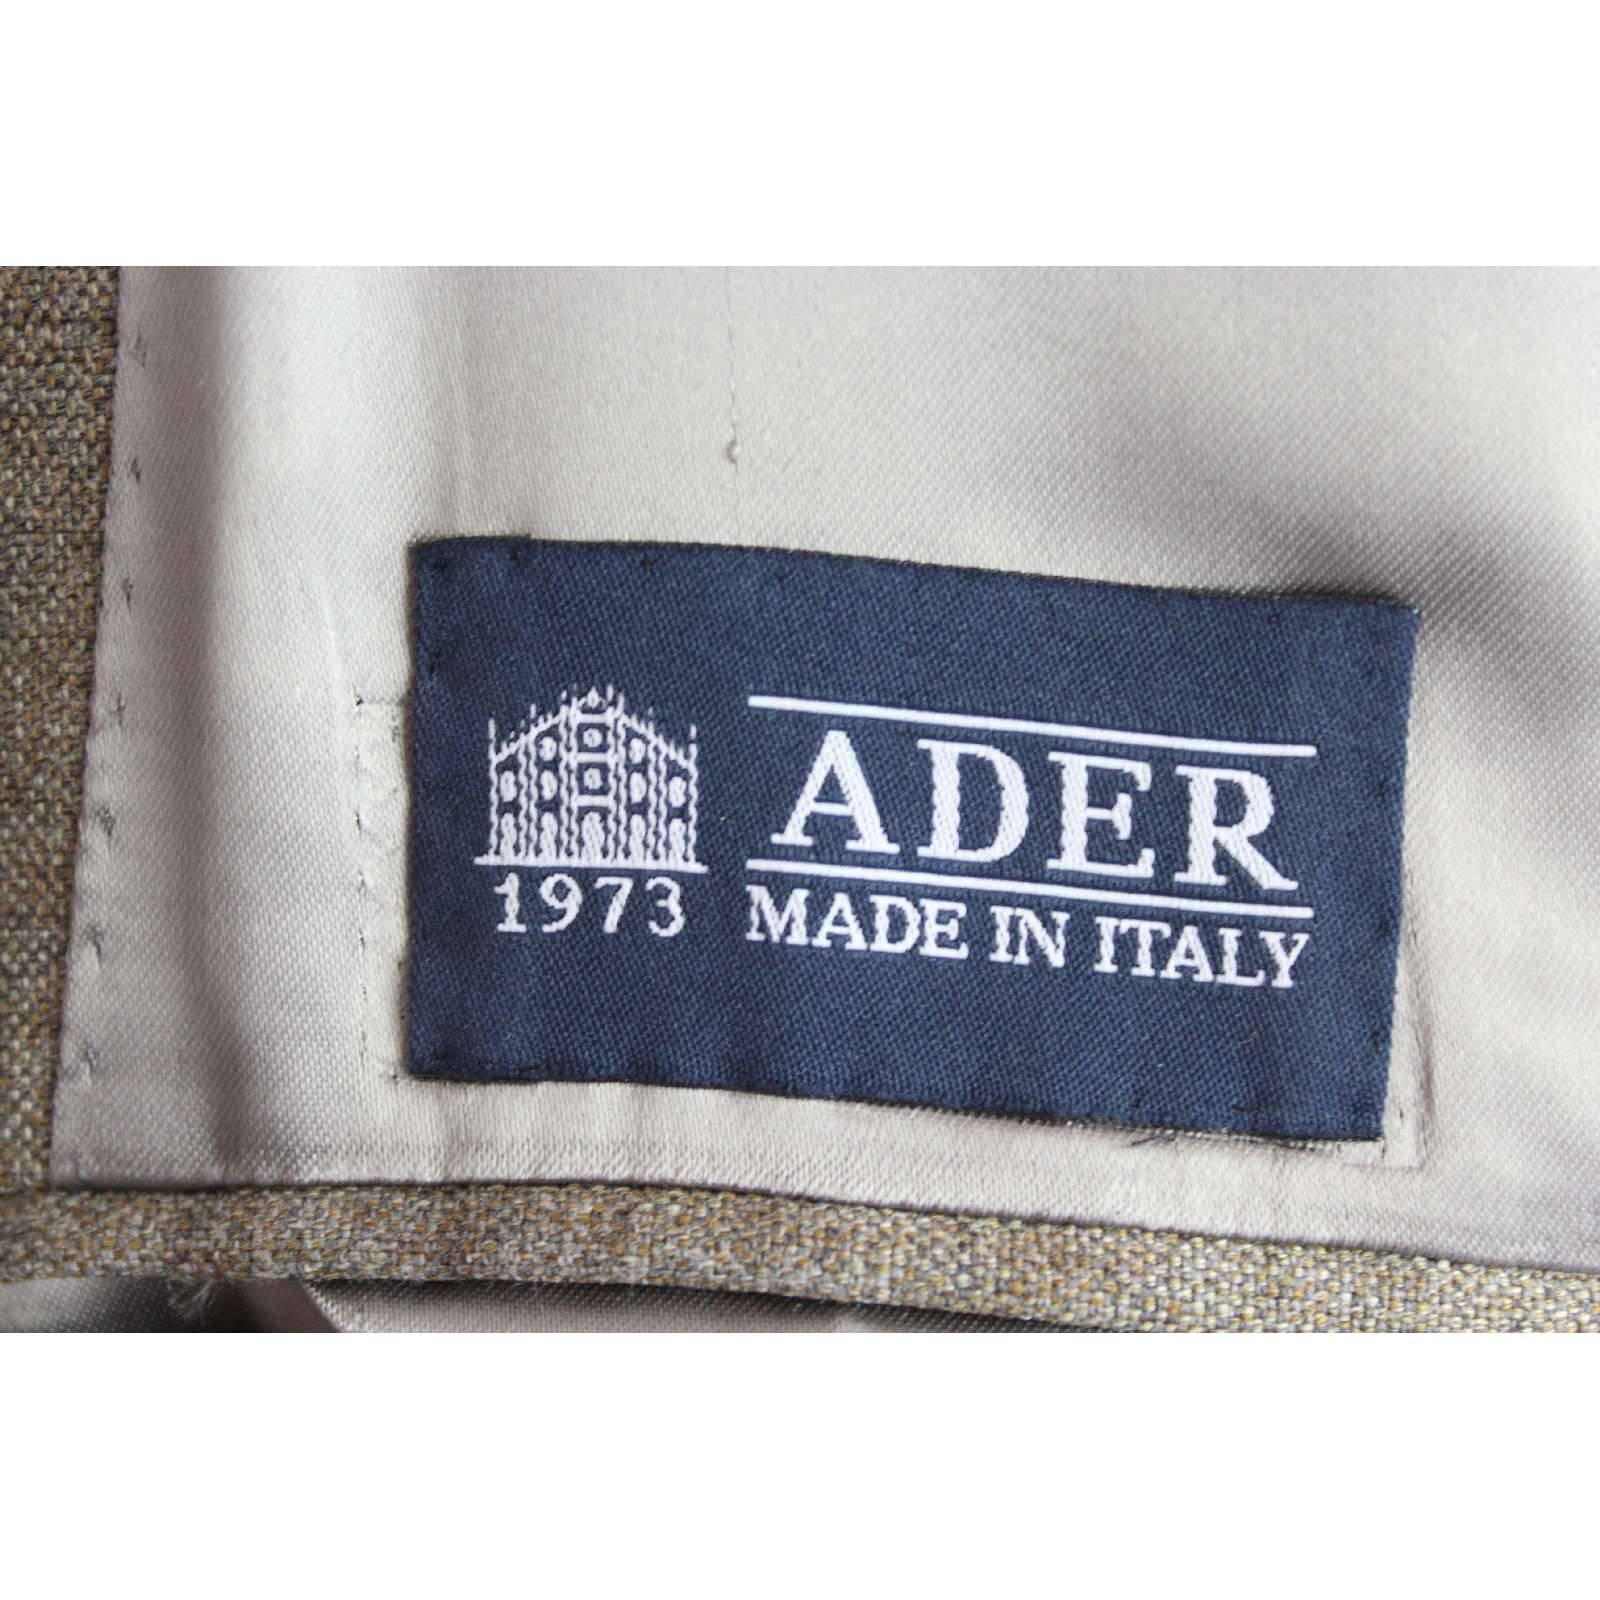 Men's Loro Piana Zelander Ader beige merino wool coat size 48 men’ s vintage 1990s